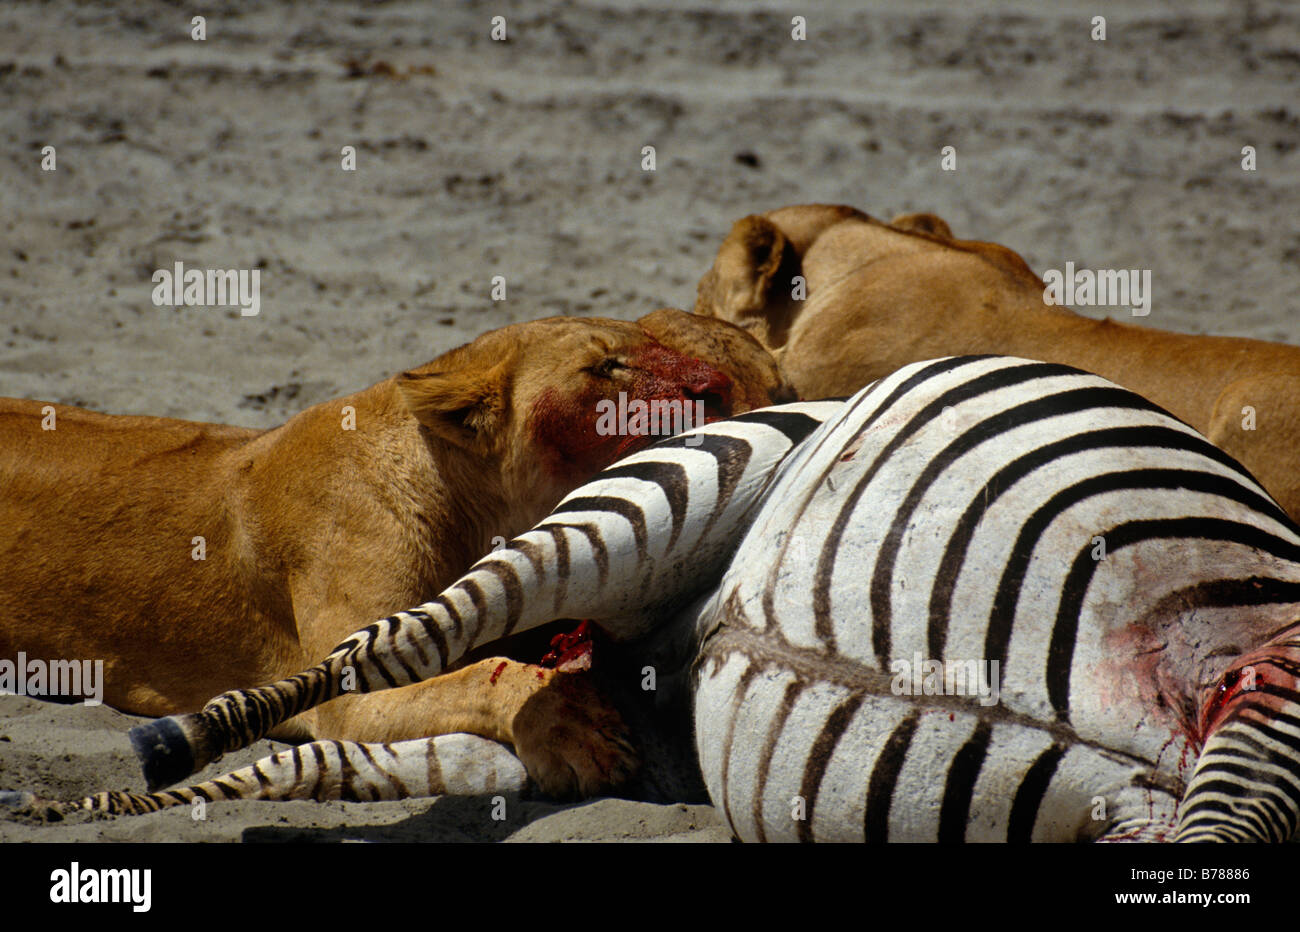 Les Lions sont des animaux puissants qui chasse habituellement en groupes de deux ou plus coordonnée et leurs tiges des proies choisies TUER LION TANZANIE Banque D'Images